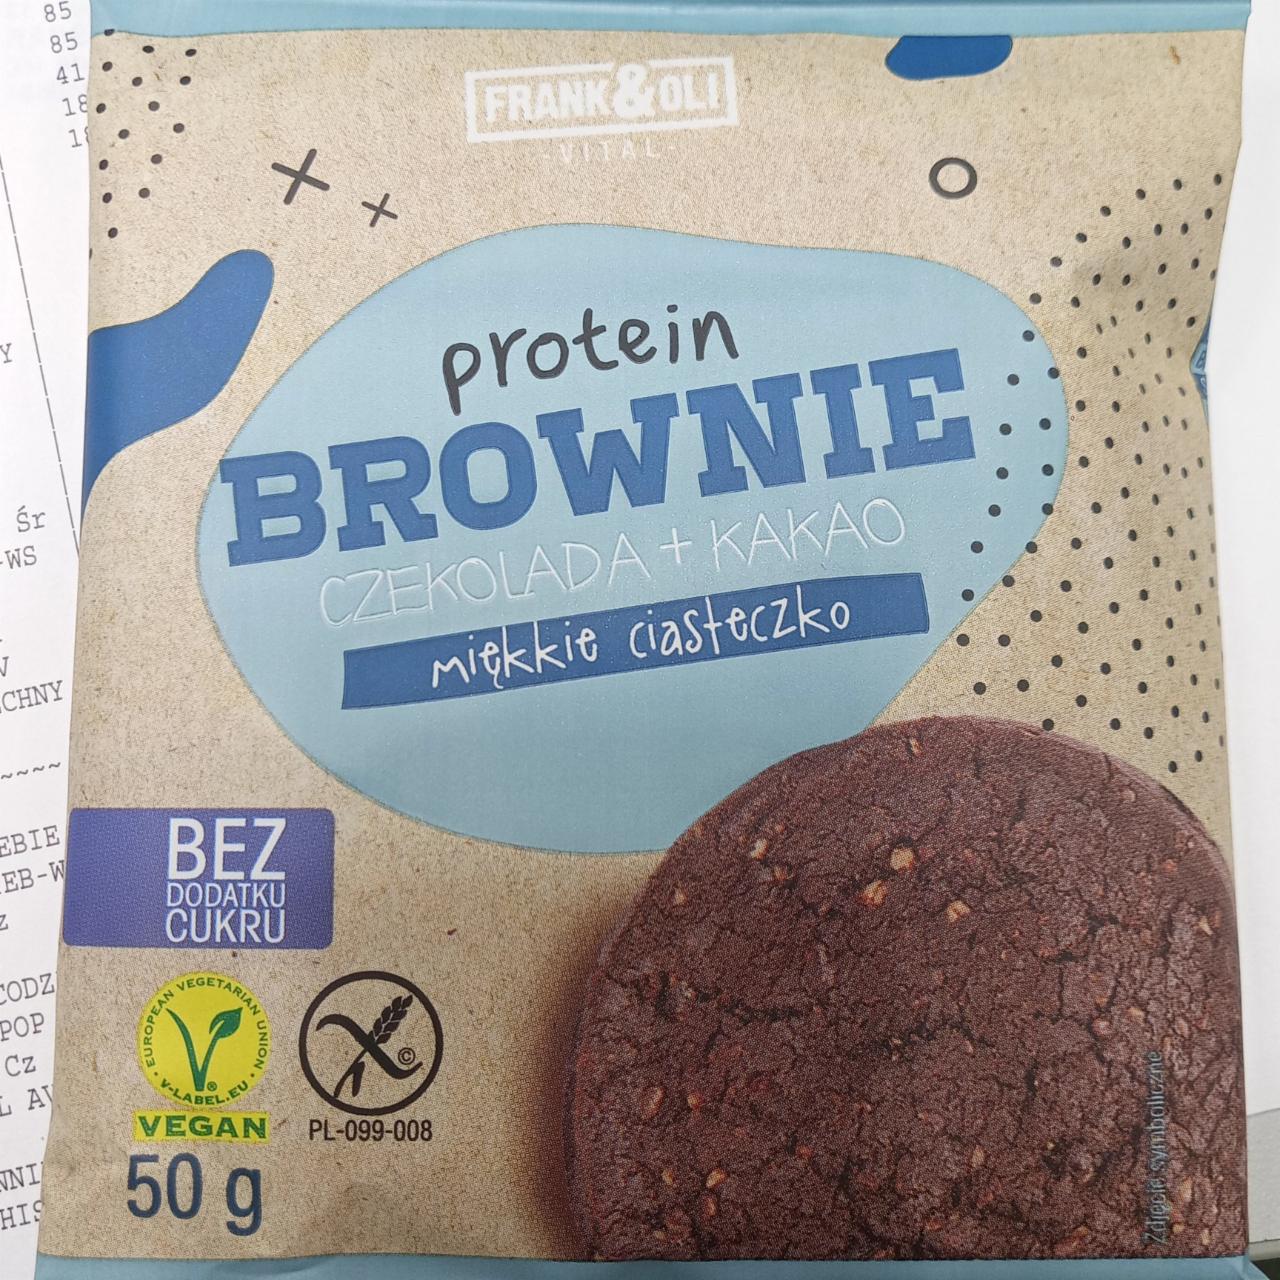 Zdjęcia - Protein brownie chocolate Frank&Oli